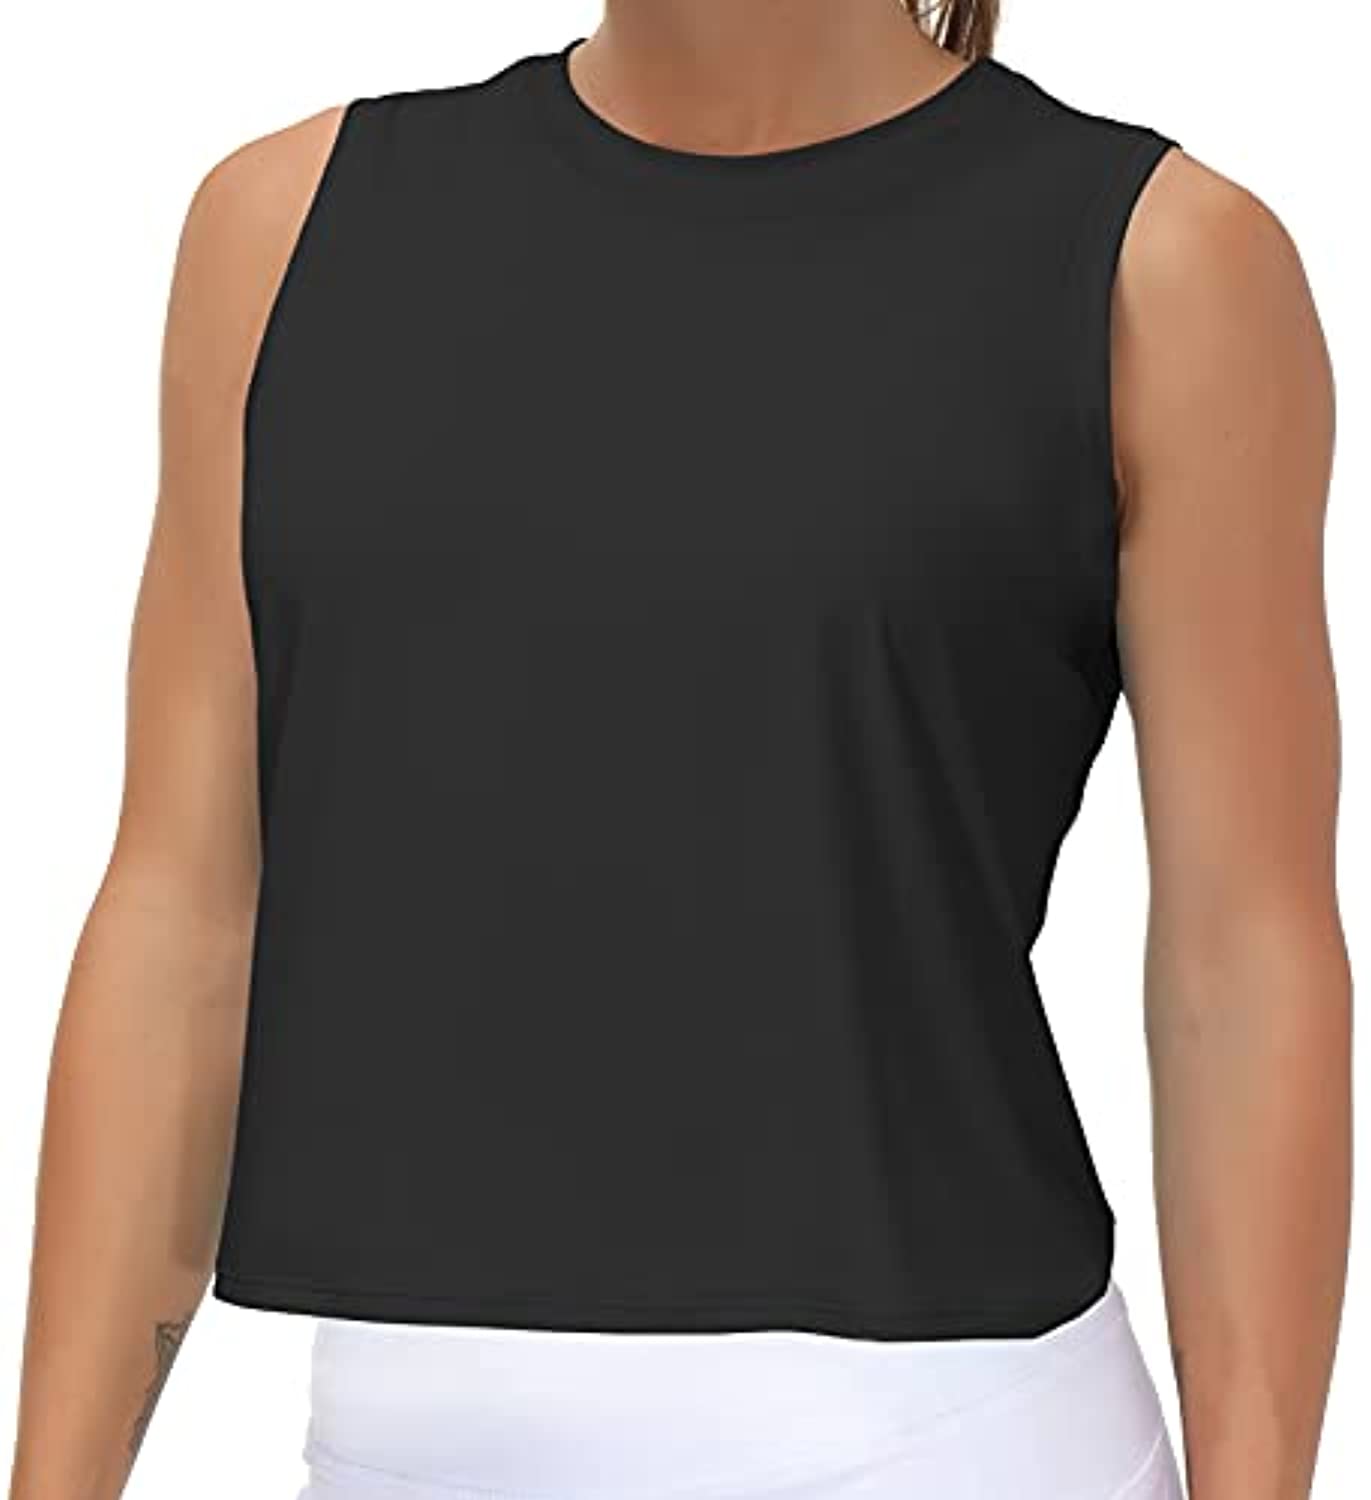 Mujer ejercicio deporte Yoga camisa, vestimenta deportiva sin mangas blusas  para gimnasio Running chaleco entrenamiento Crop Top mujer camiseta